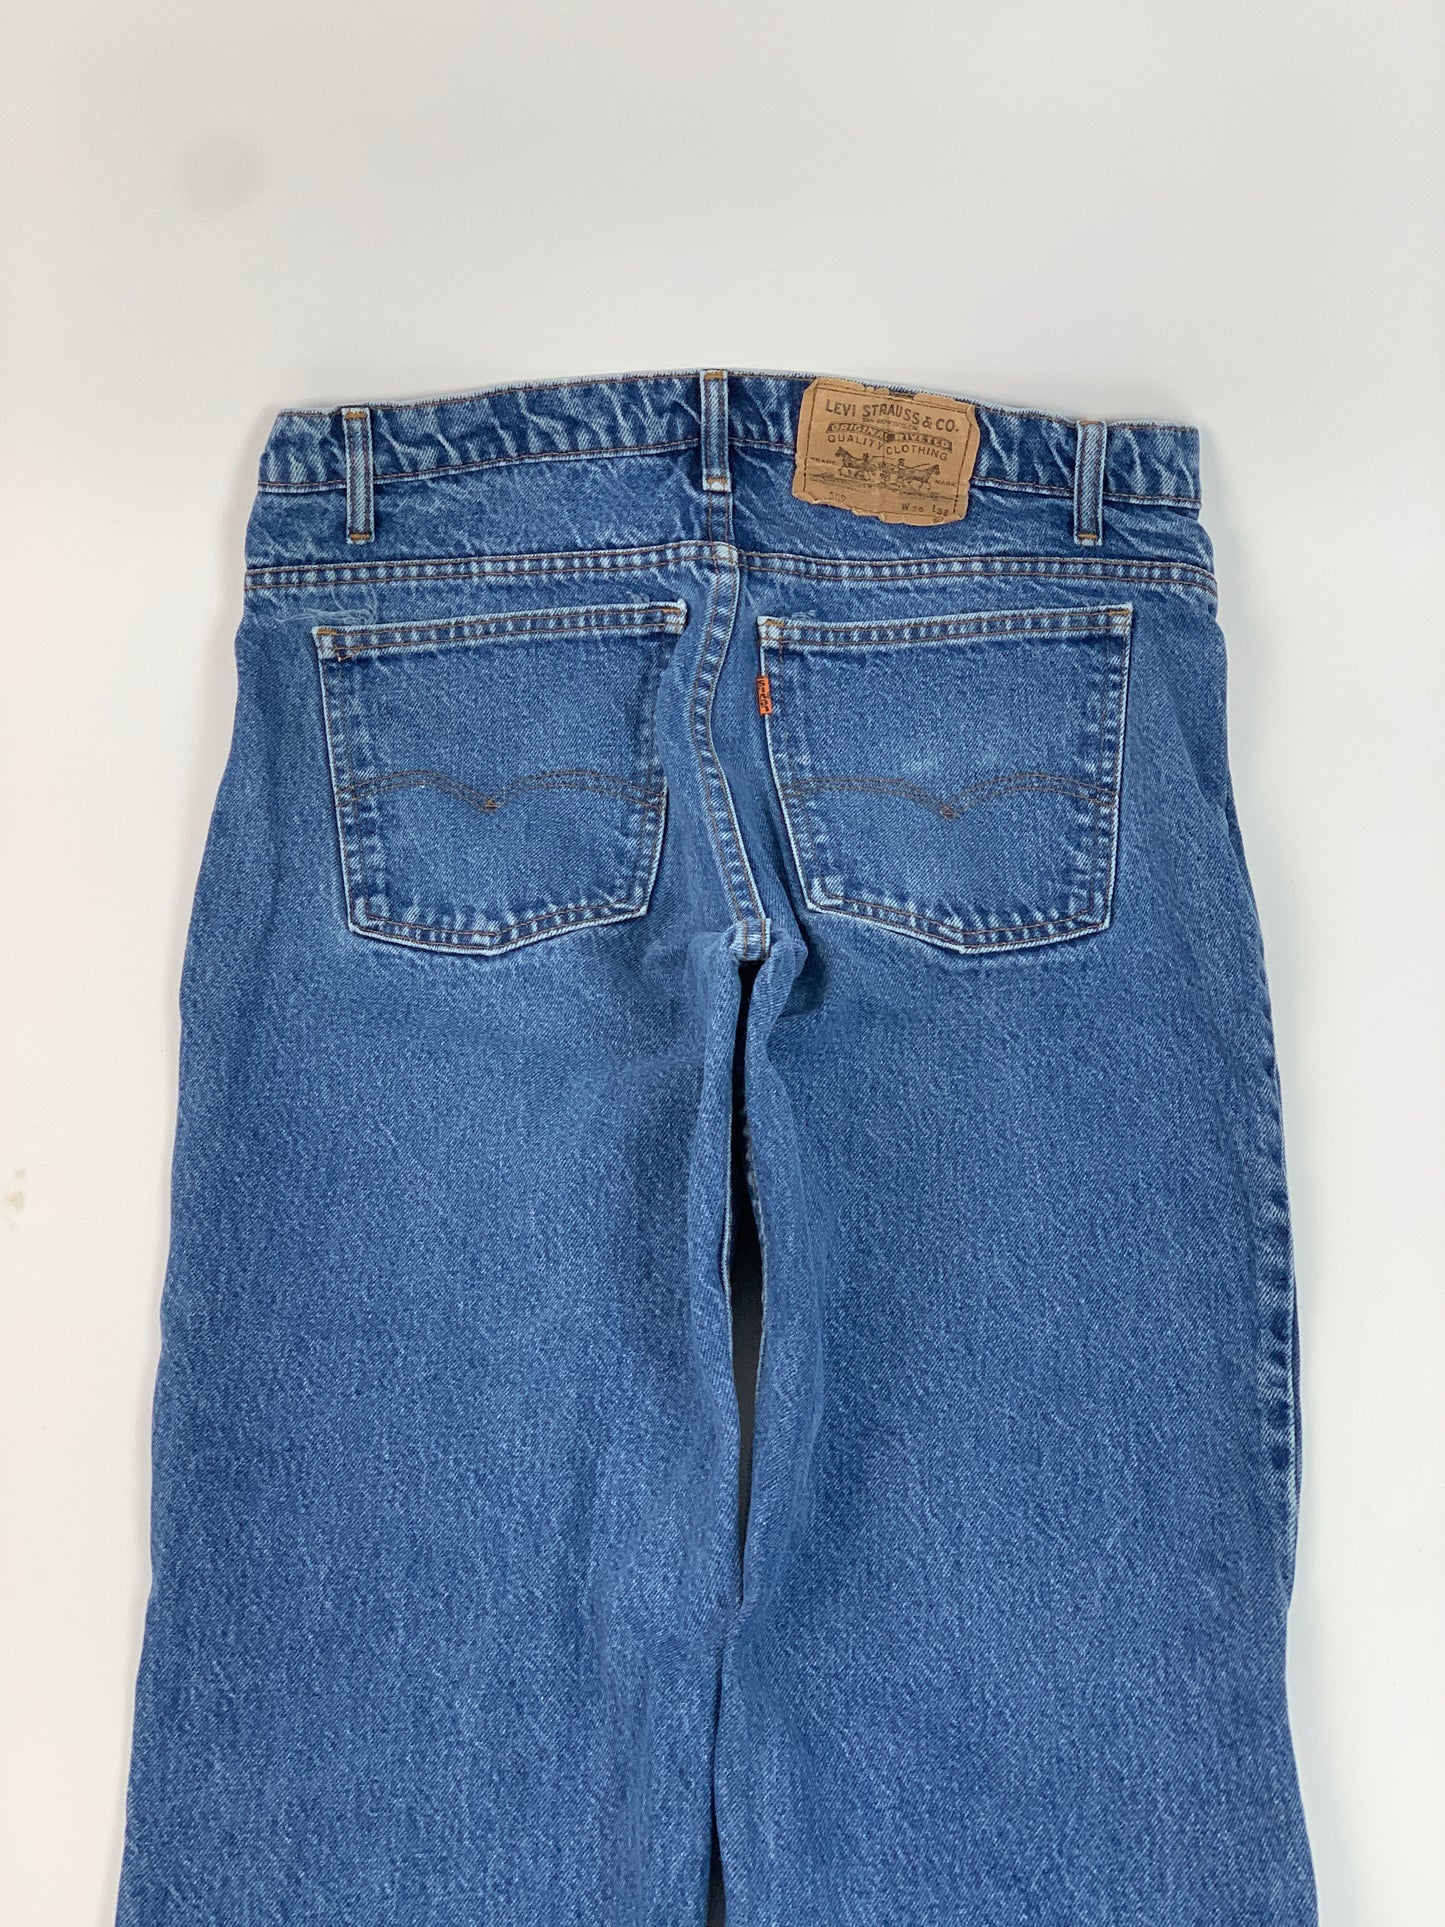 Levis Orange Tab Vintage Jeans - 34